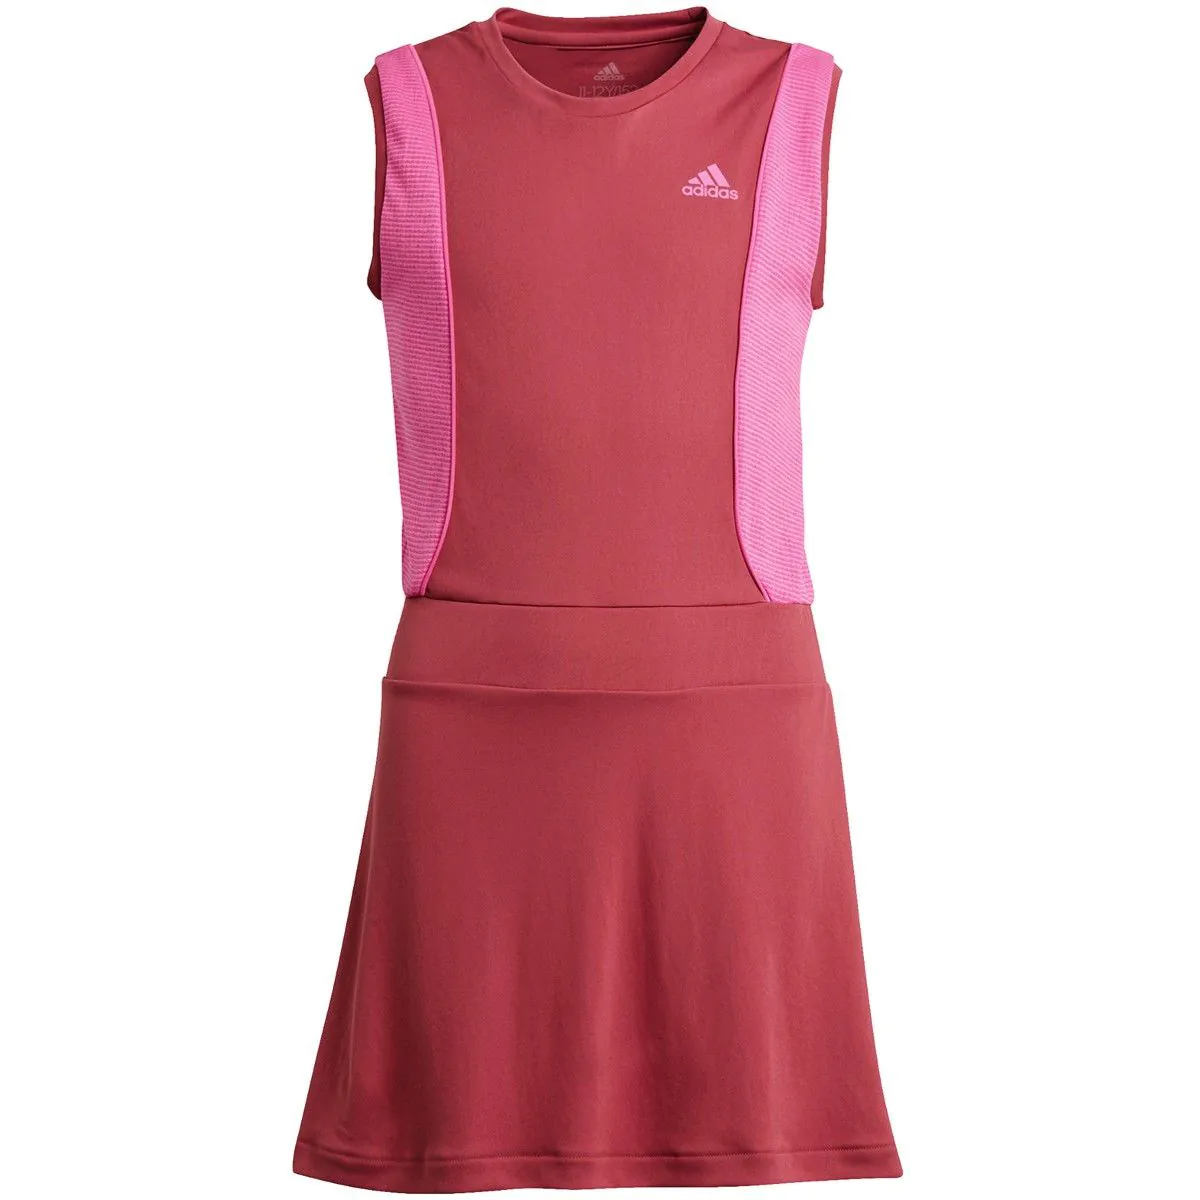 adidas Pop Up Girls' Tennis Dress GK3013